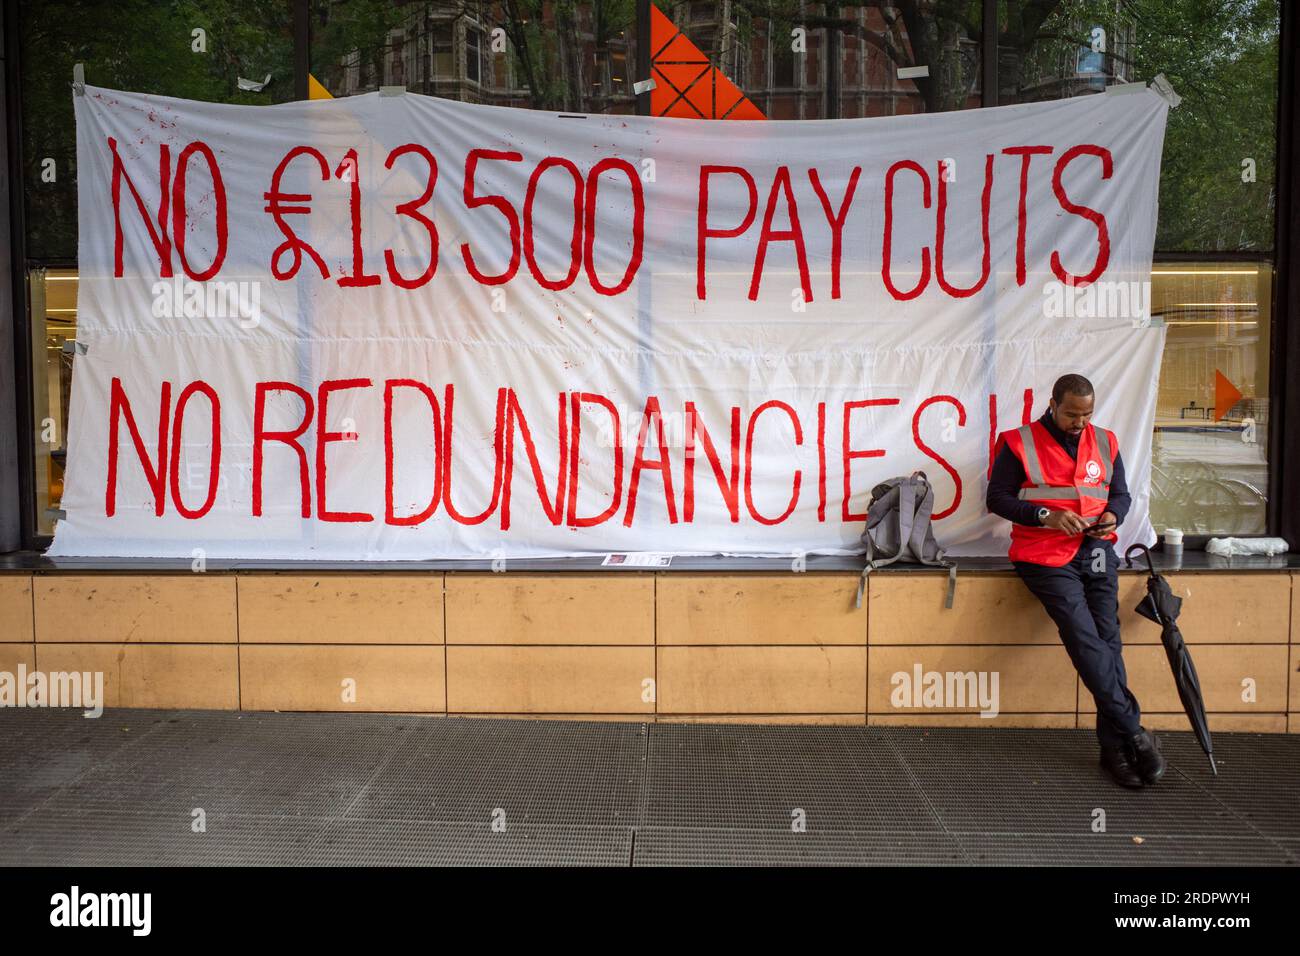 Bannière de protestation à l'extérieur de l'UCL contre les réductions de salaire et les licenciements. L'UCL tire 256 gardes de sécurité. Les autres sont contraints de signer des contrats à salaire inférieur. ROYAUME-UNI Banque D'Images